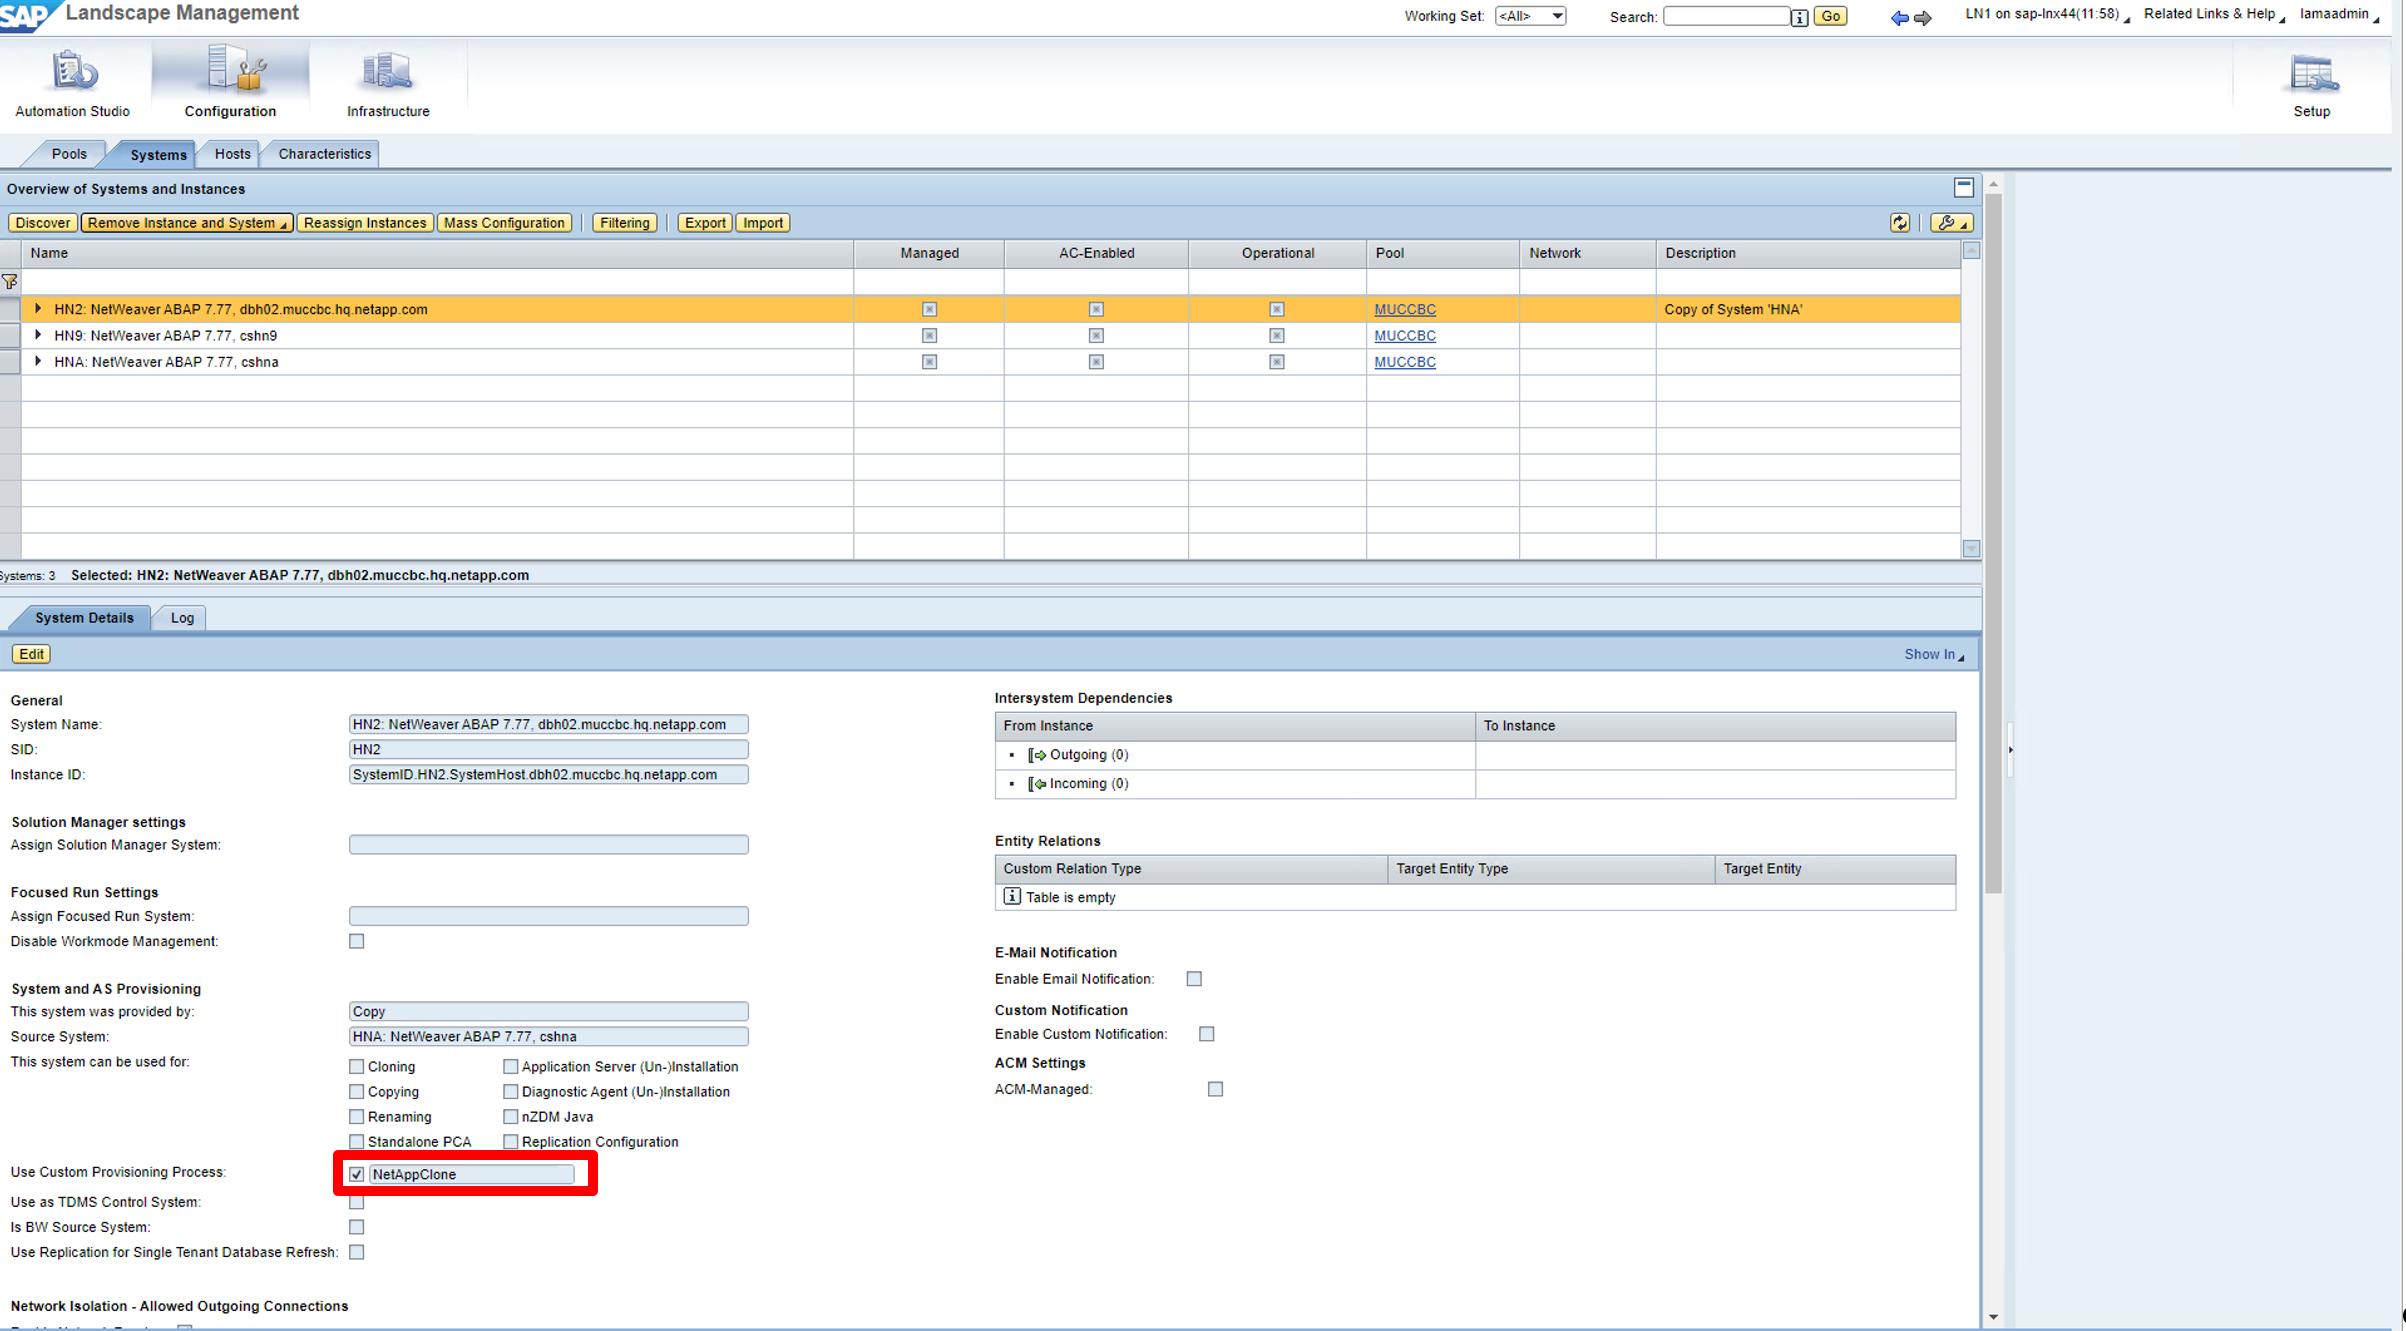 此屏幕截图显示了Lama Systems屏幕以及系统详细信息、并选中了Use Custom Processing Process复选框。